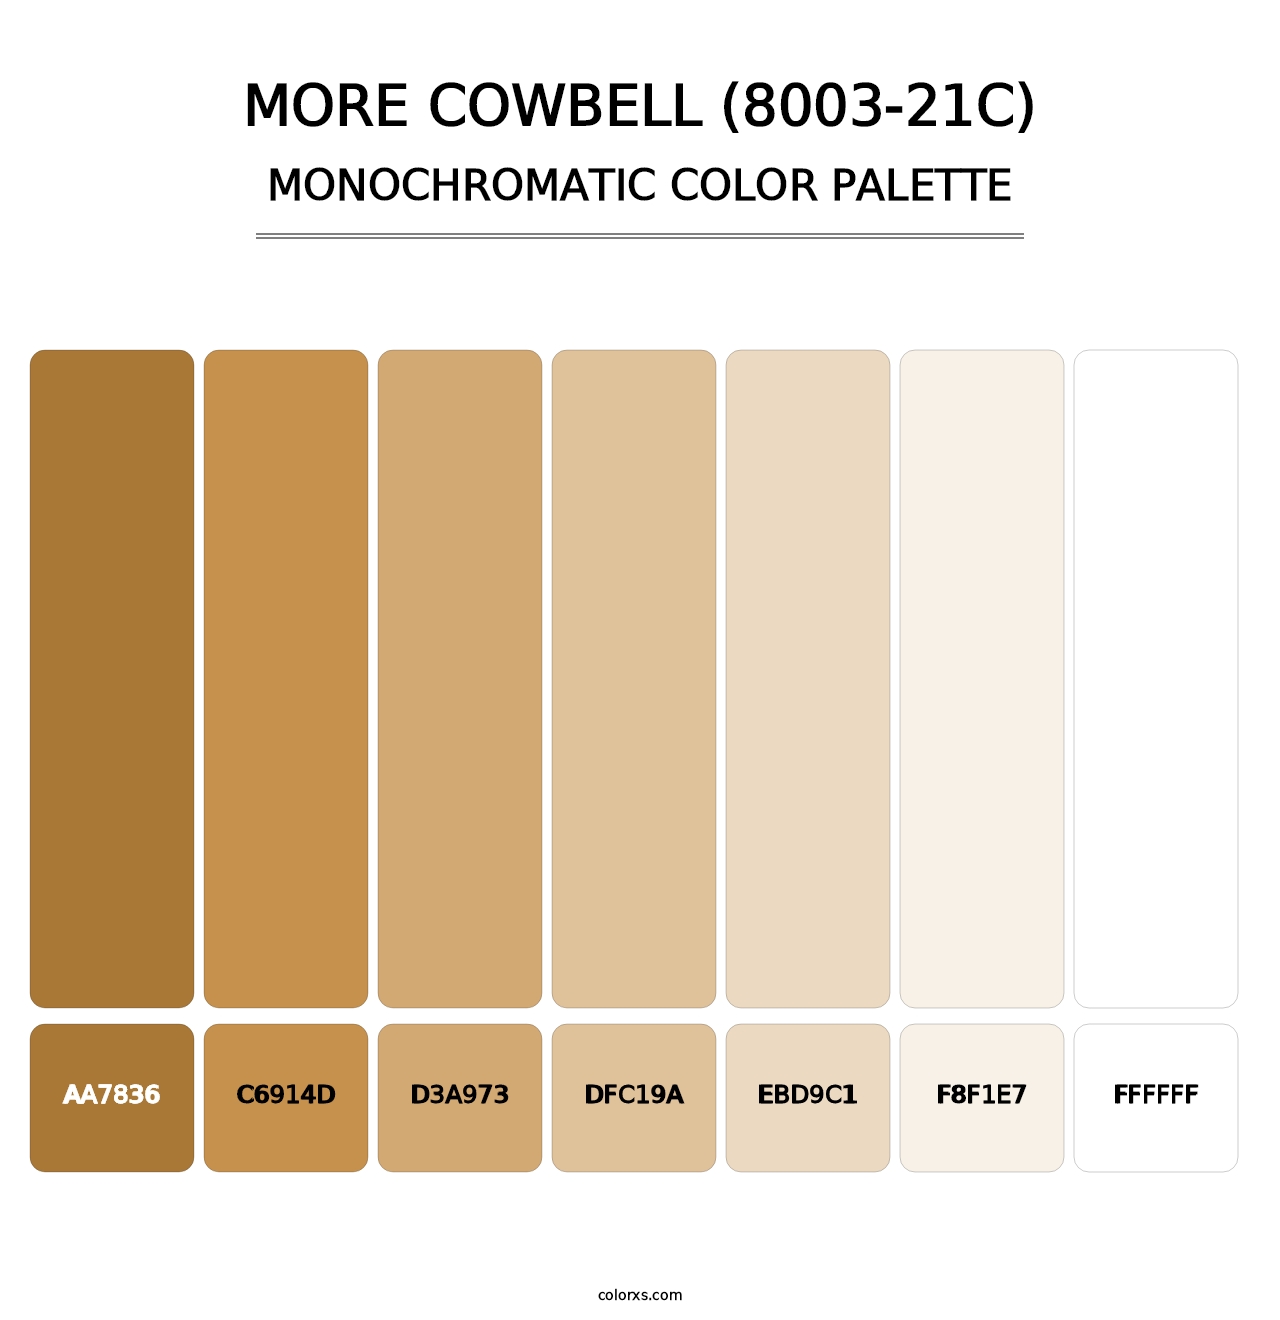 More Cowbell (8003-21C) - Monochromatic Color Palette